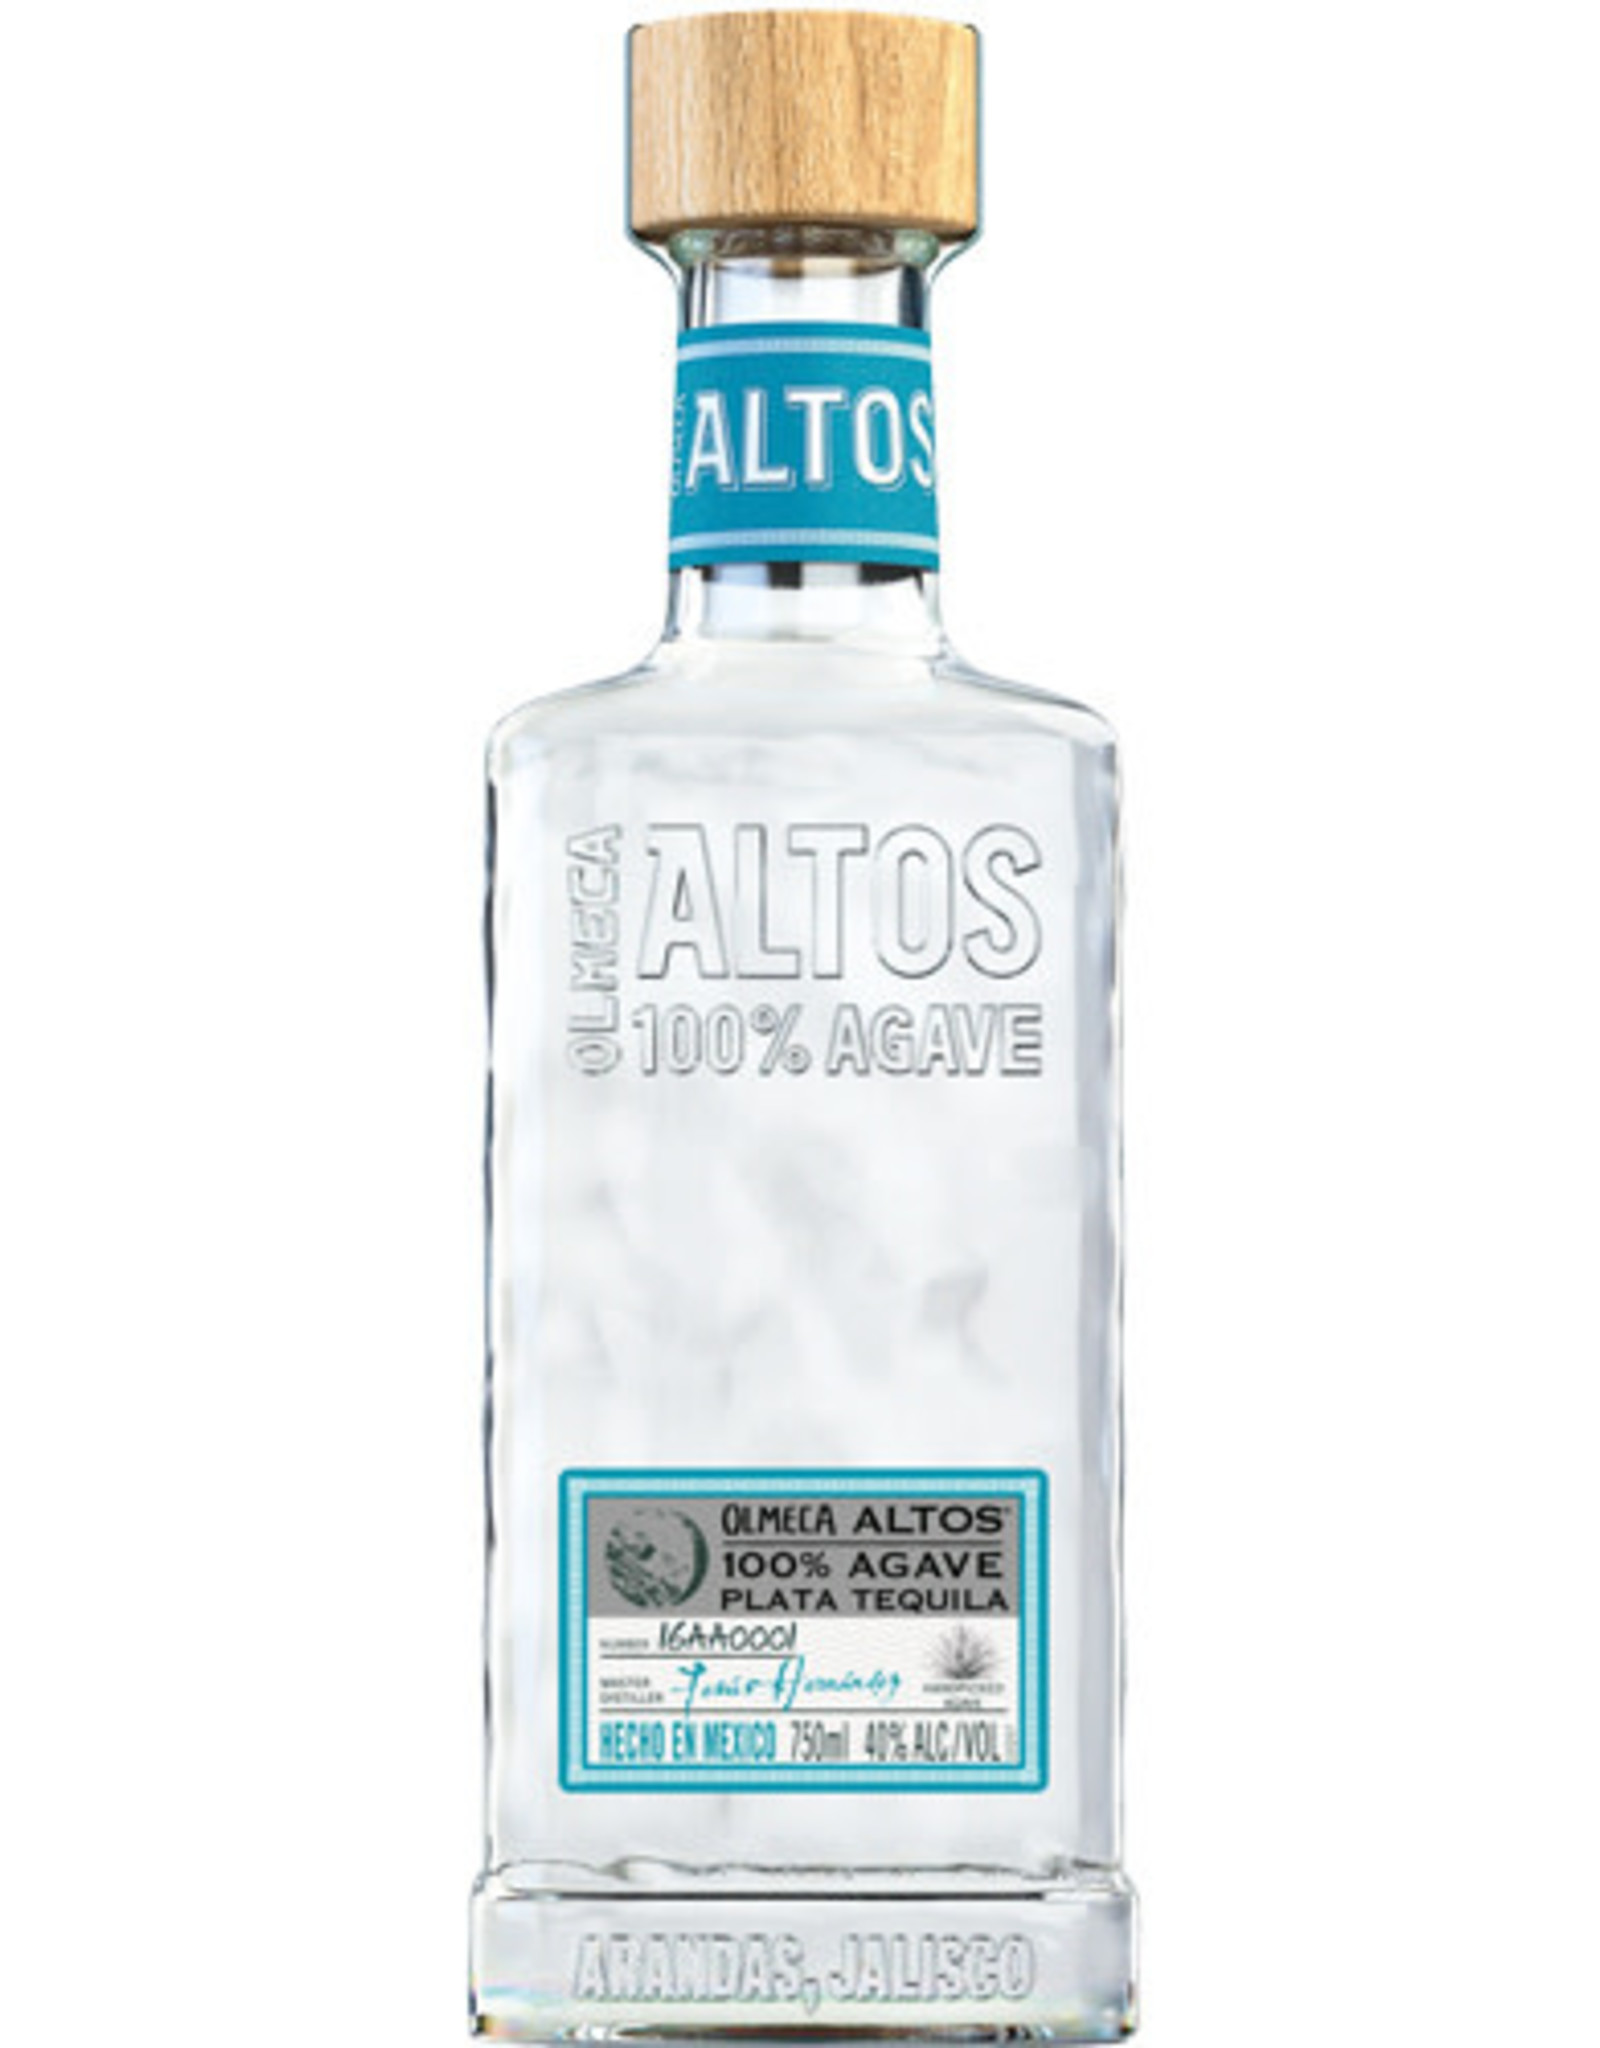 Altos Altos Tequila